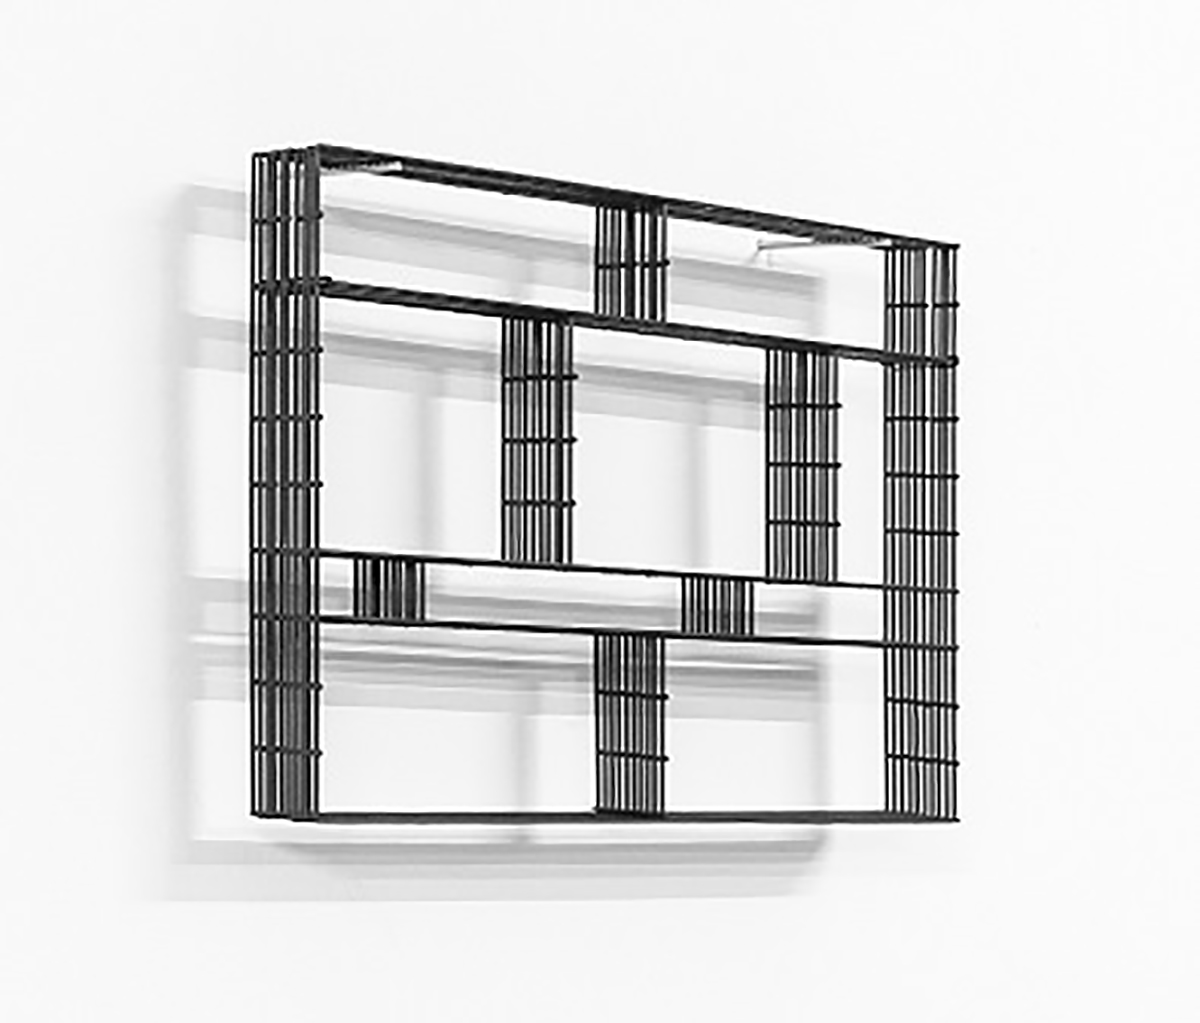 Deconstrucción en cuatro filas (horizontal (2018) - Rafa Munárriz